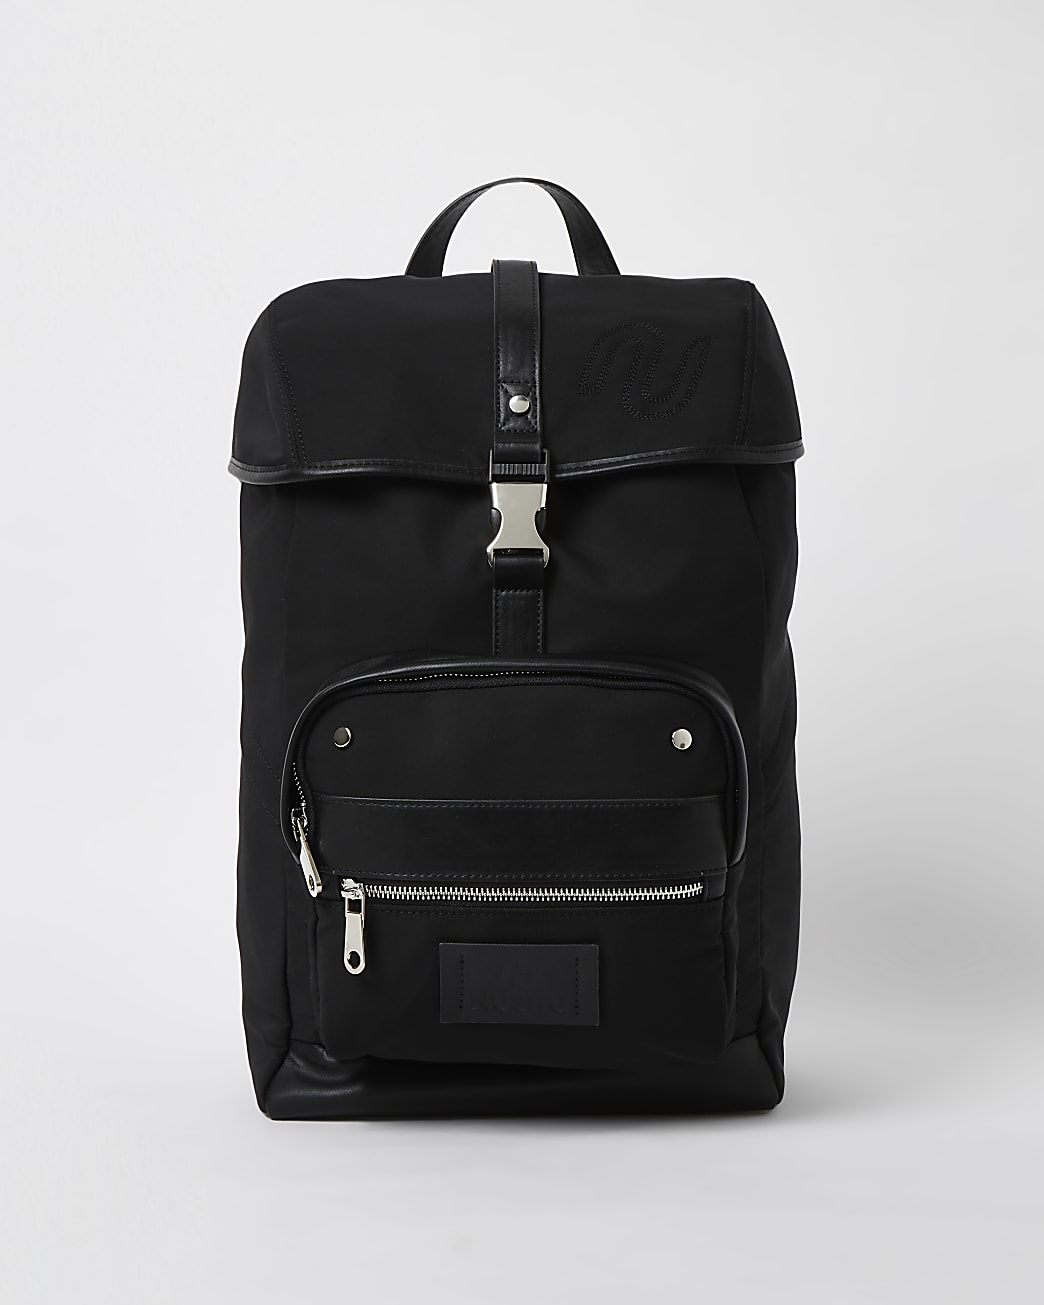 Black NUSHU backpack